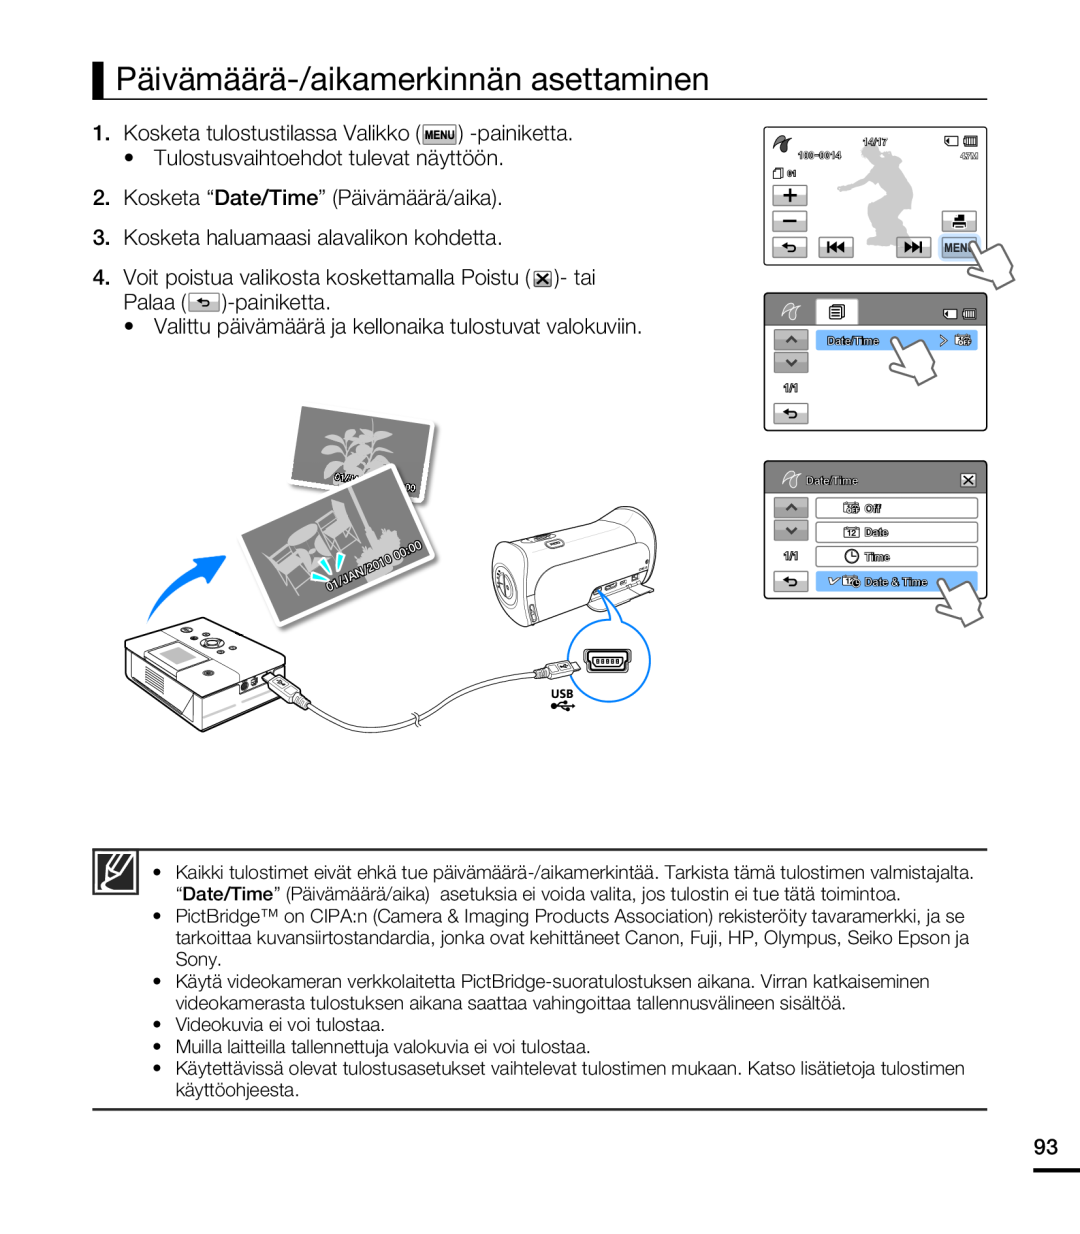 Samsung HMX-T10BP/EDC manual Päivämäärä-/aikamerkinnän asettaminen, Valittu päivämäärä ja kellonaika tulostuvat valokuviin 